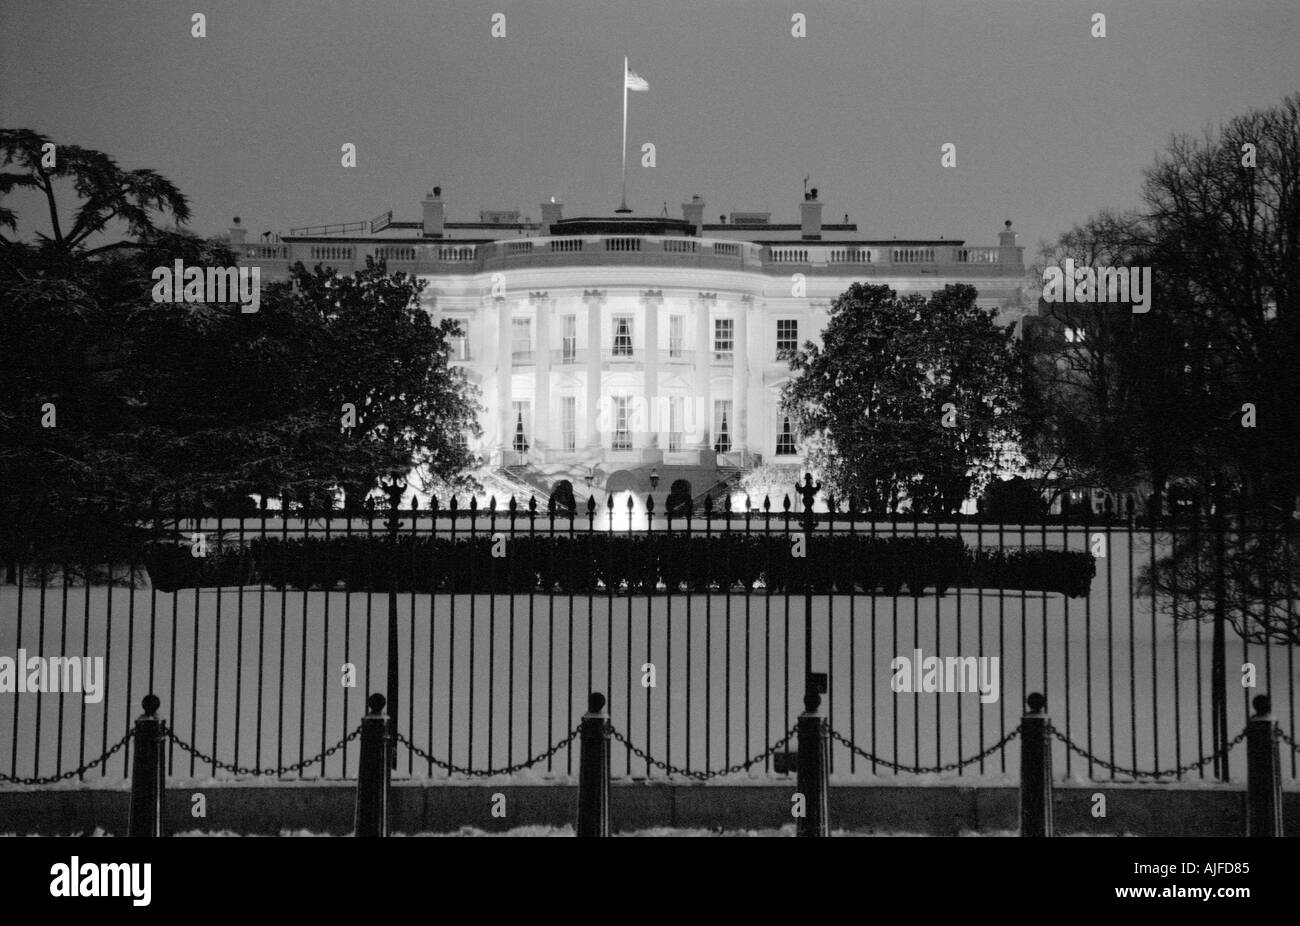 The White House in Washington D.C. Stock Photo